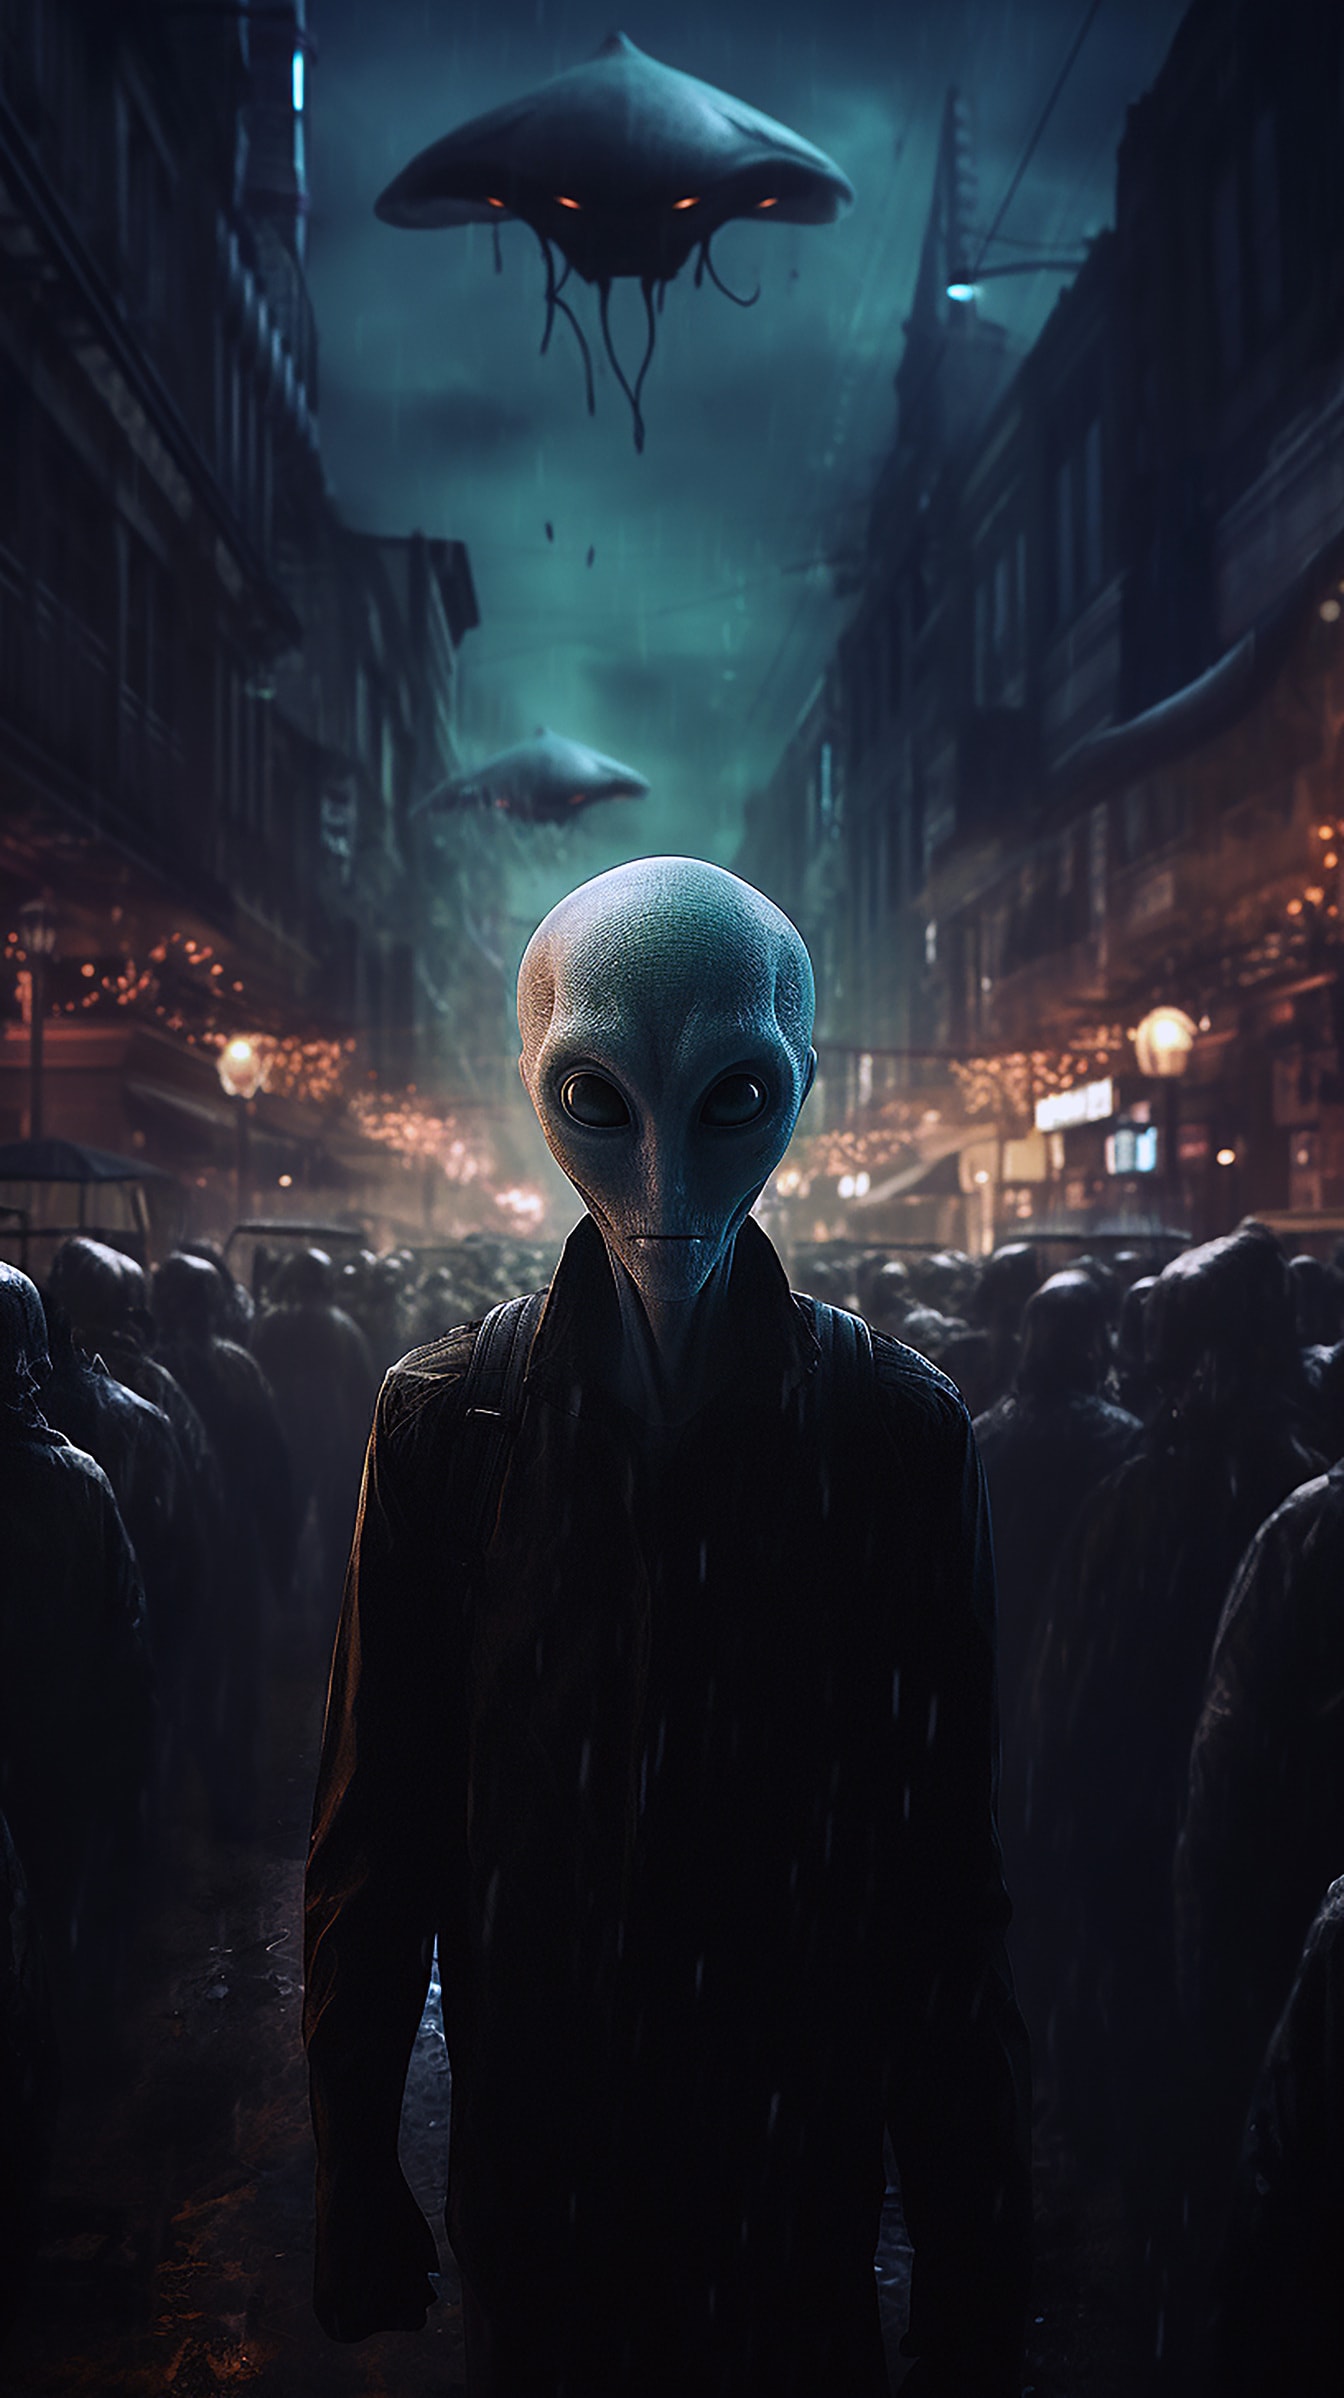 Humanoid alien in street at night fantasy horror illustration